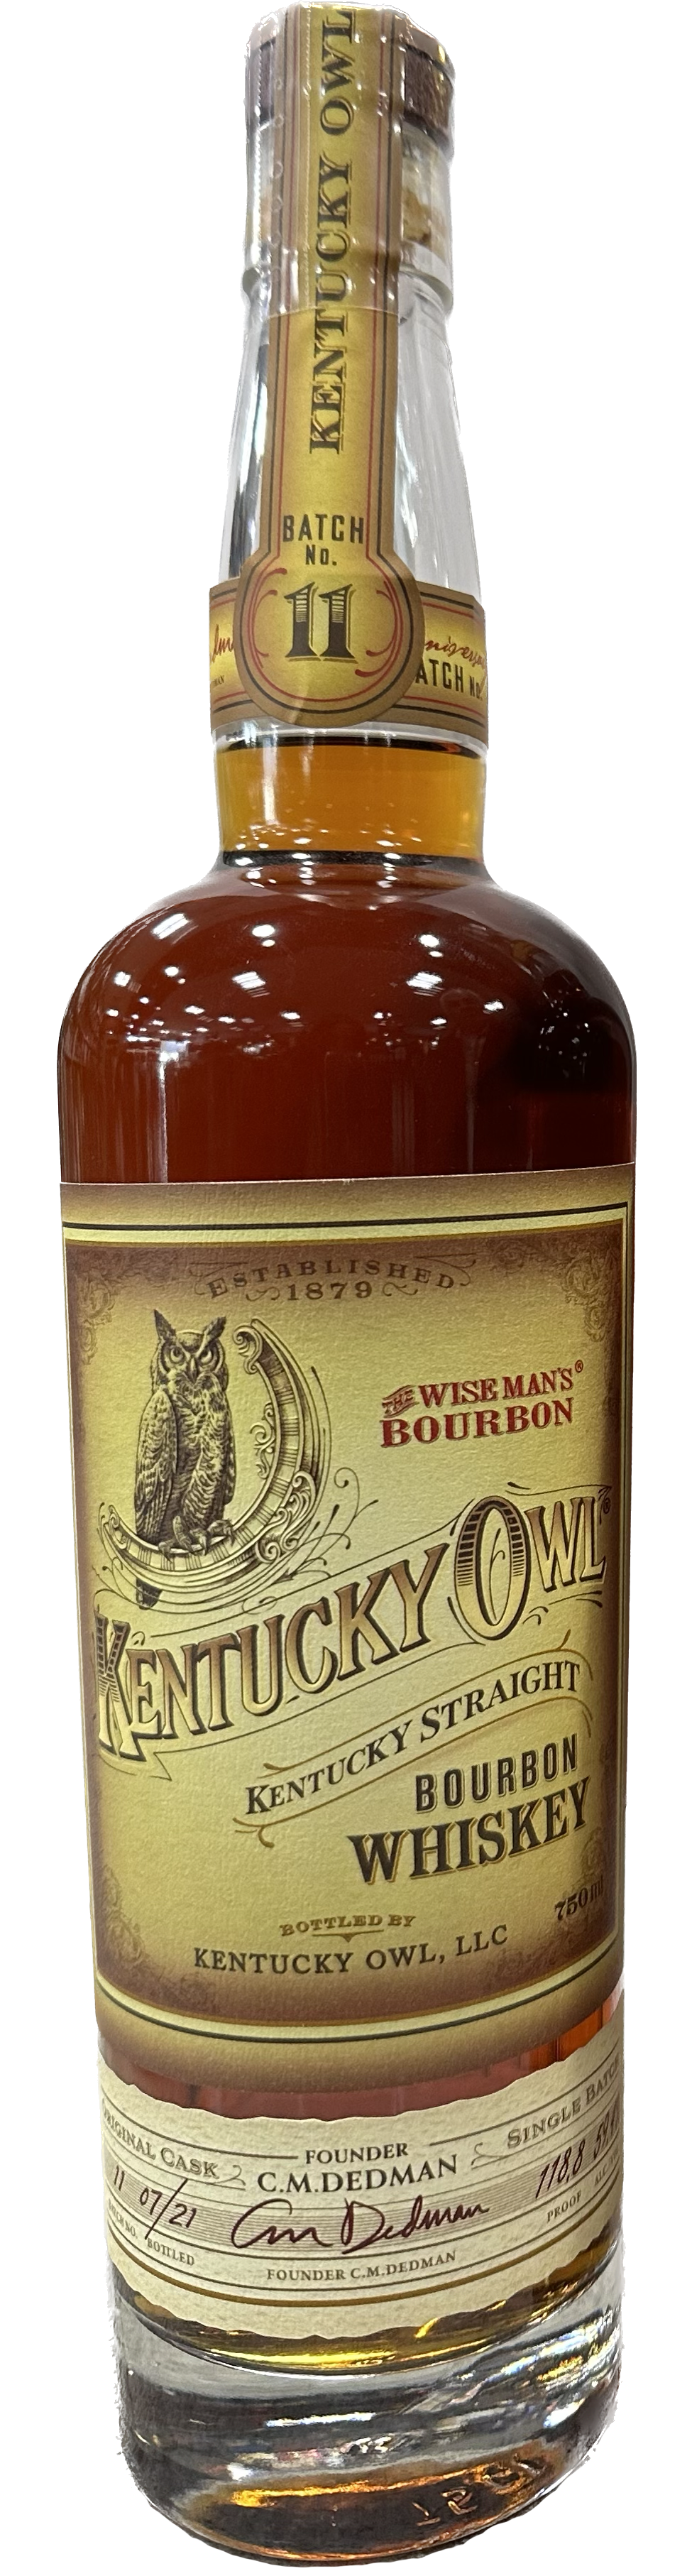 KENTUCKY OWL BOURBON THE WISEMAN'S BATCH 11 KENTUCKY 750ML - Remedy Liquor